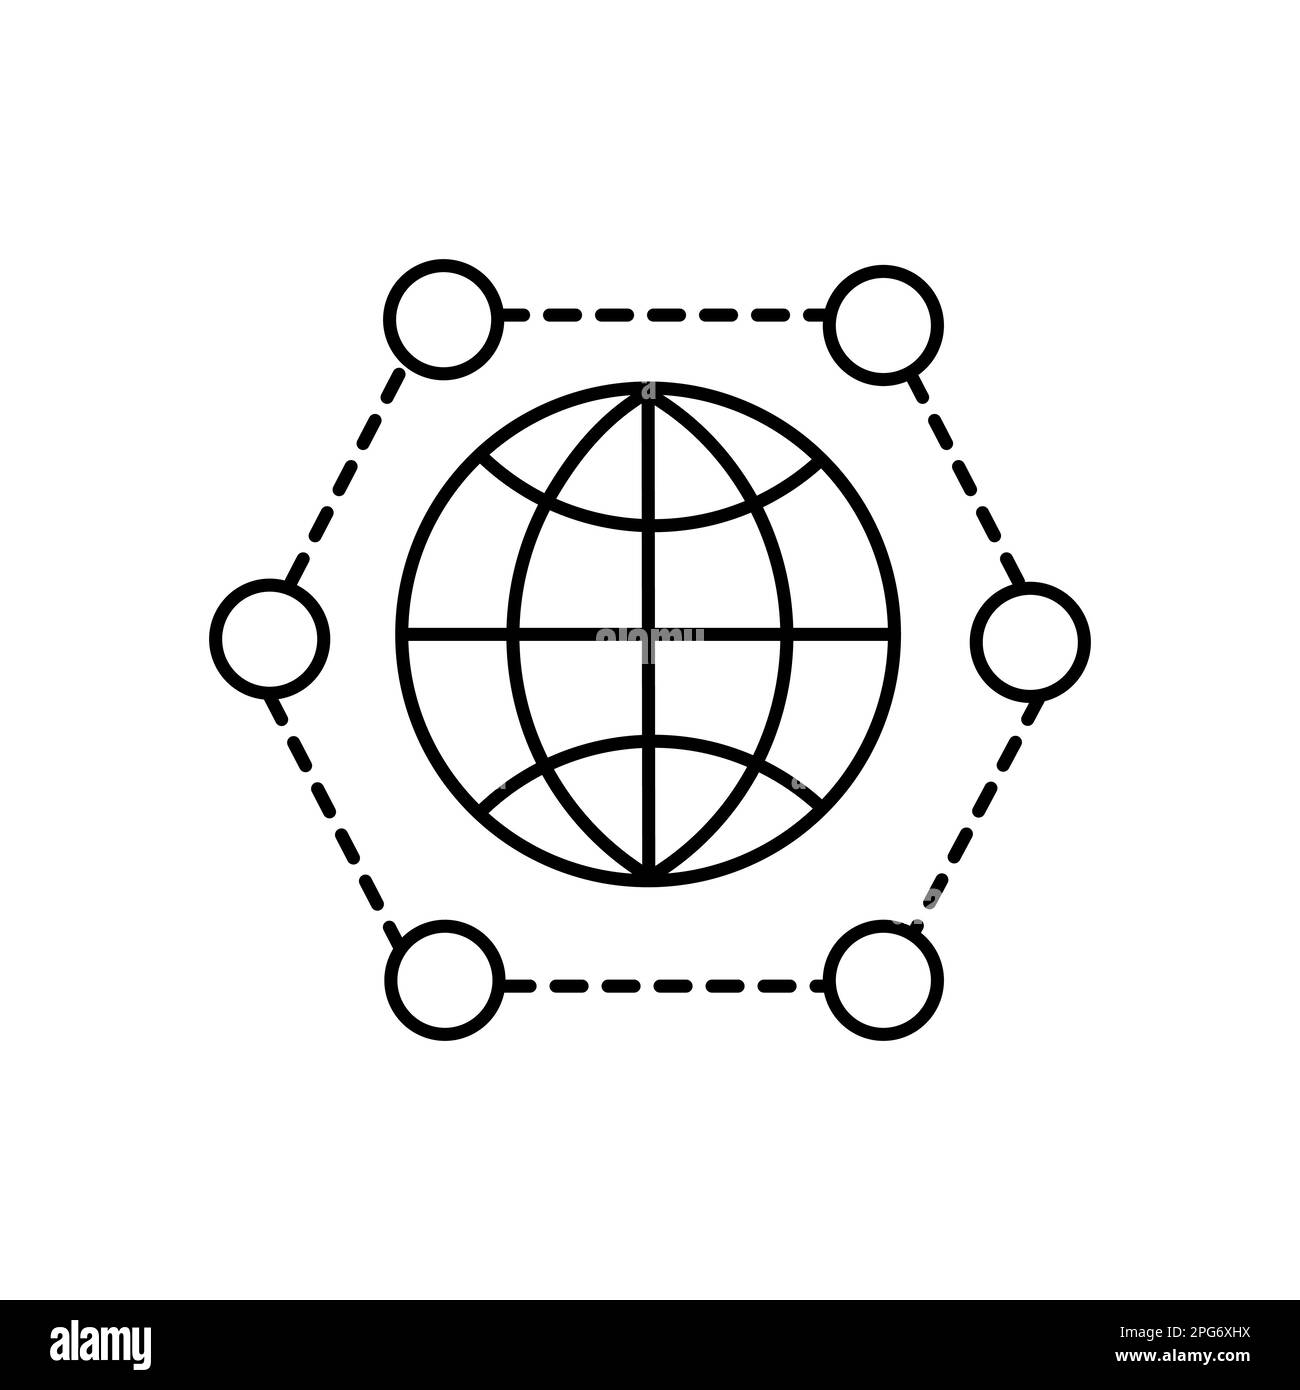 Globales Networking-Symbol in flacher Form. Netzwerksymbol auf weißem Hintergrund isoliert. Einfache schwarze Kommunikation abstraktes Symbol. Vektorgrafik für g Stock Vektor